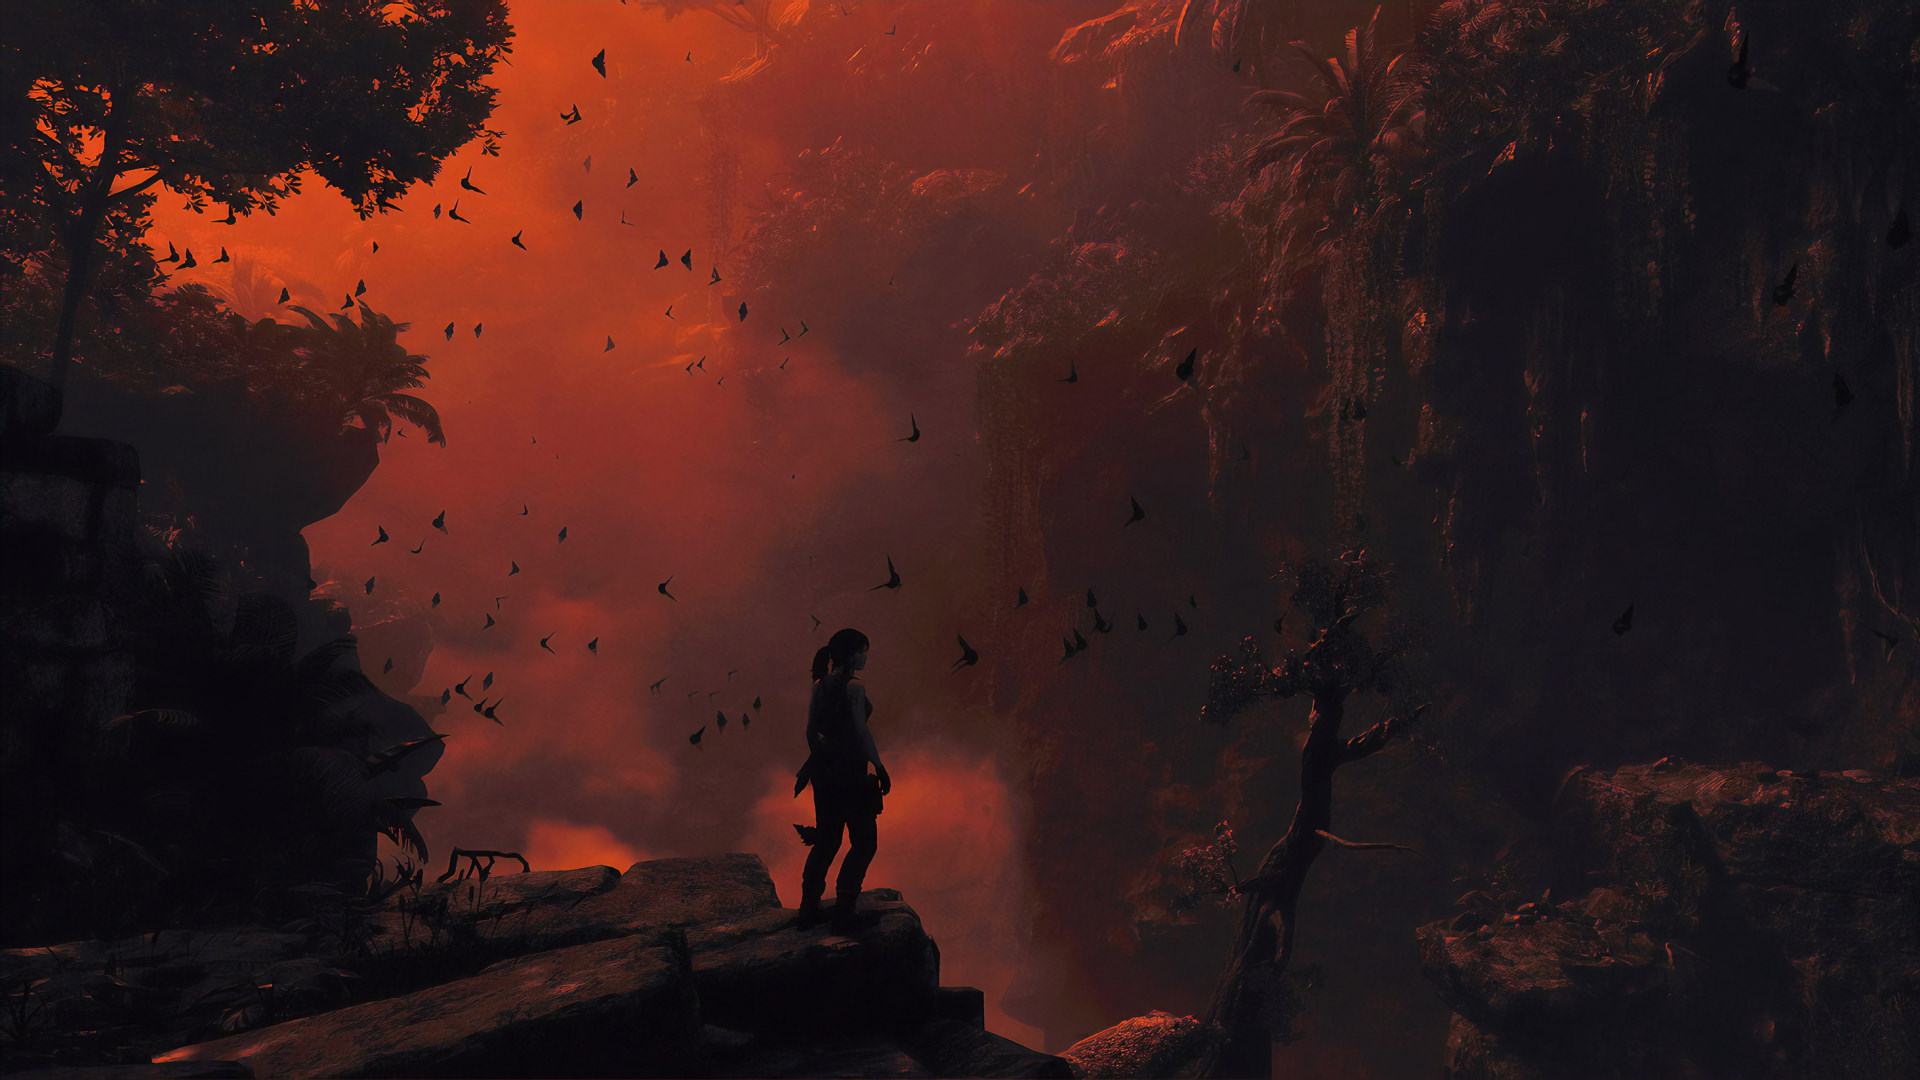 لارا کرافت ایستاده در غروب جنگل در بازی توم ریدر / Tomb Raider